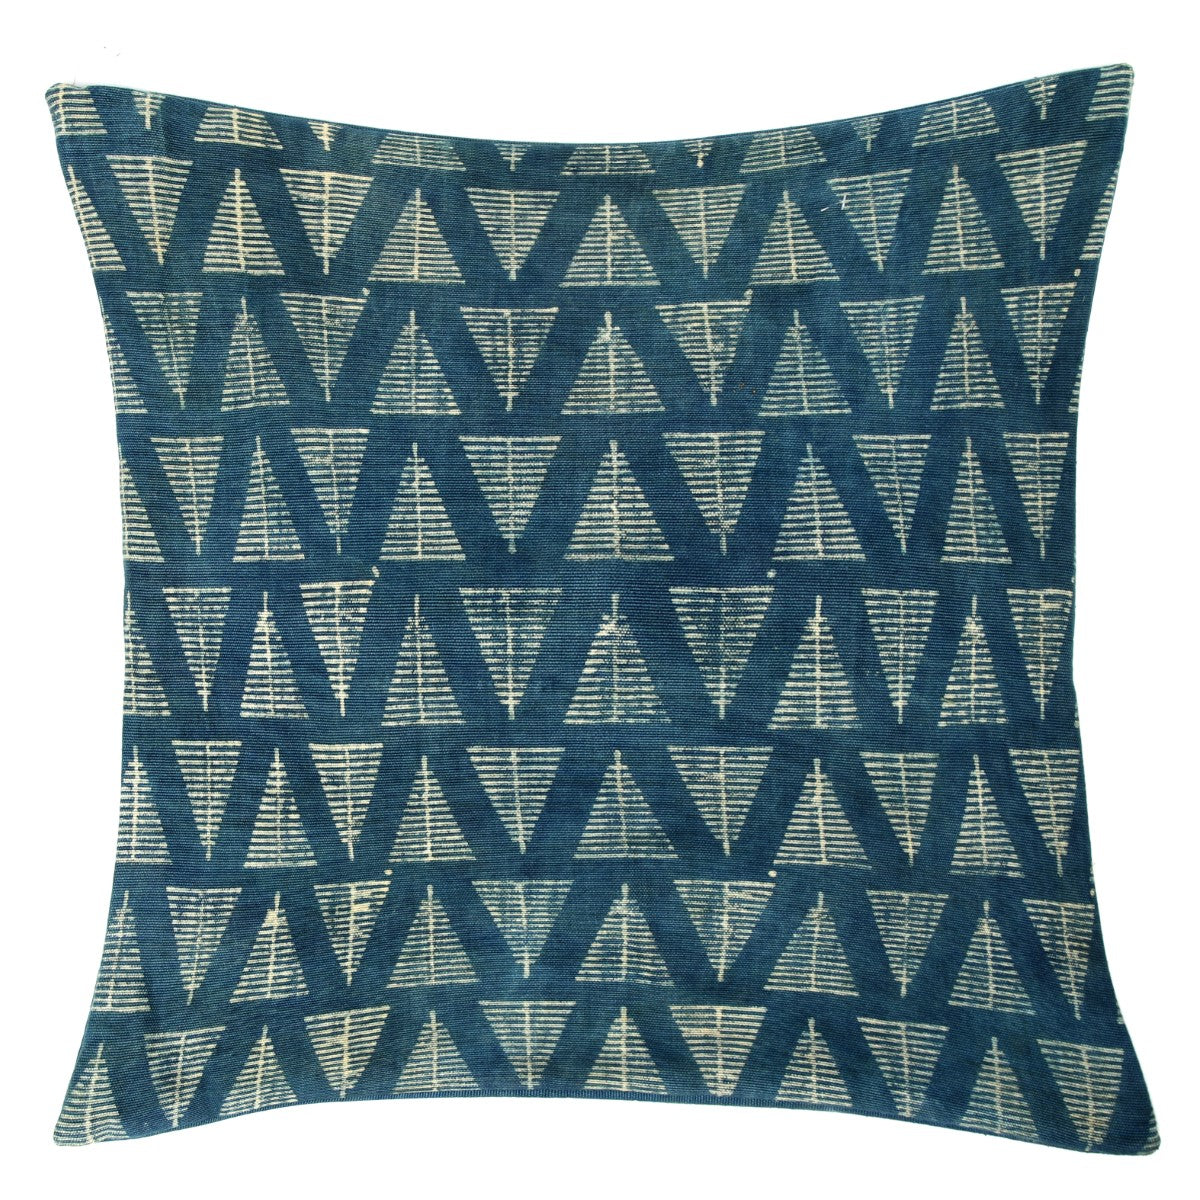 Blue Triangles Cushion Cover 20x20